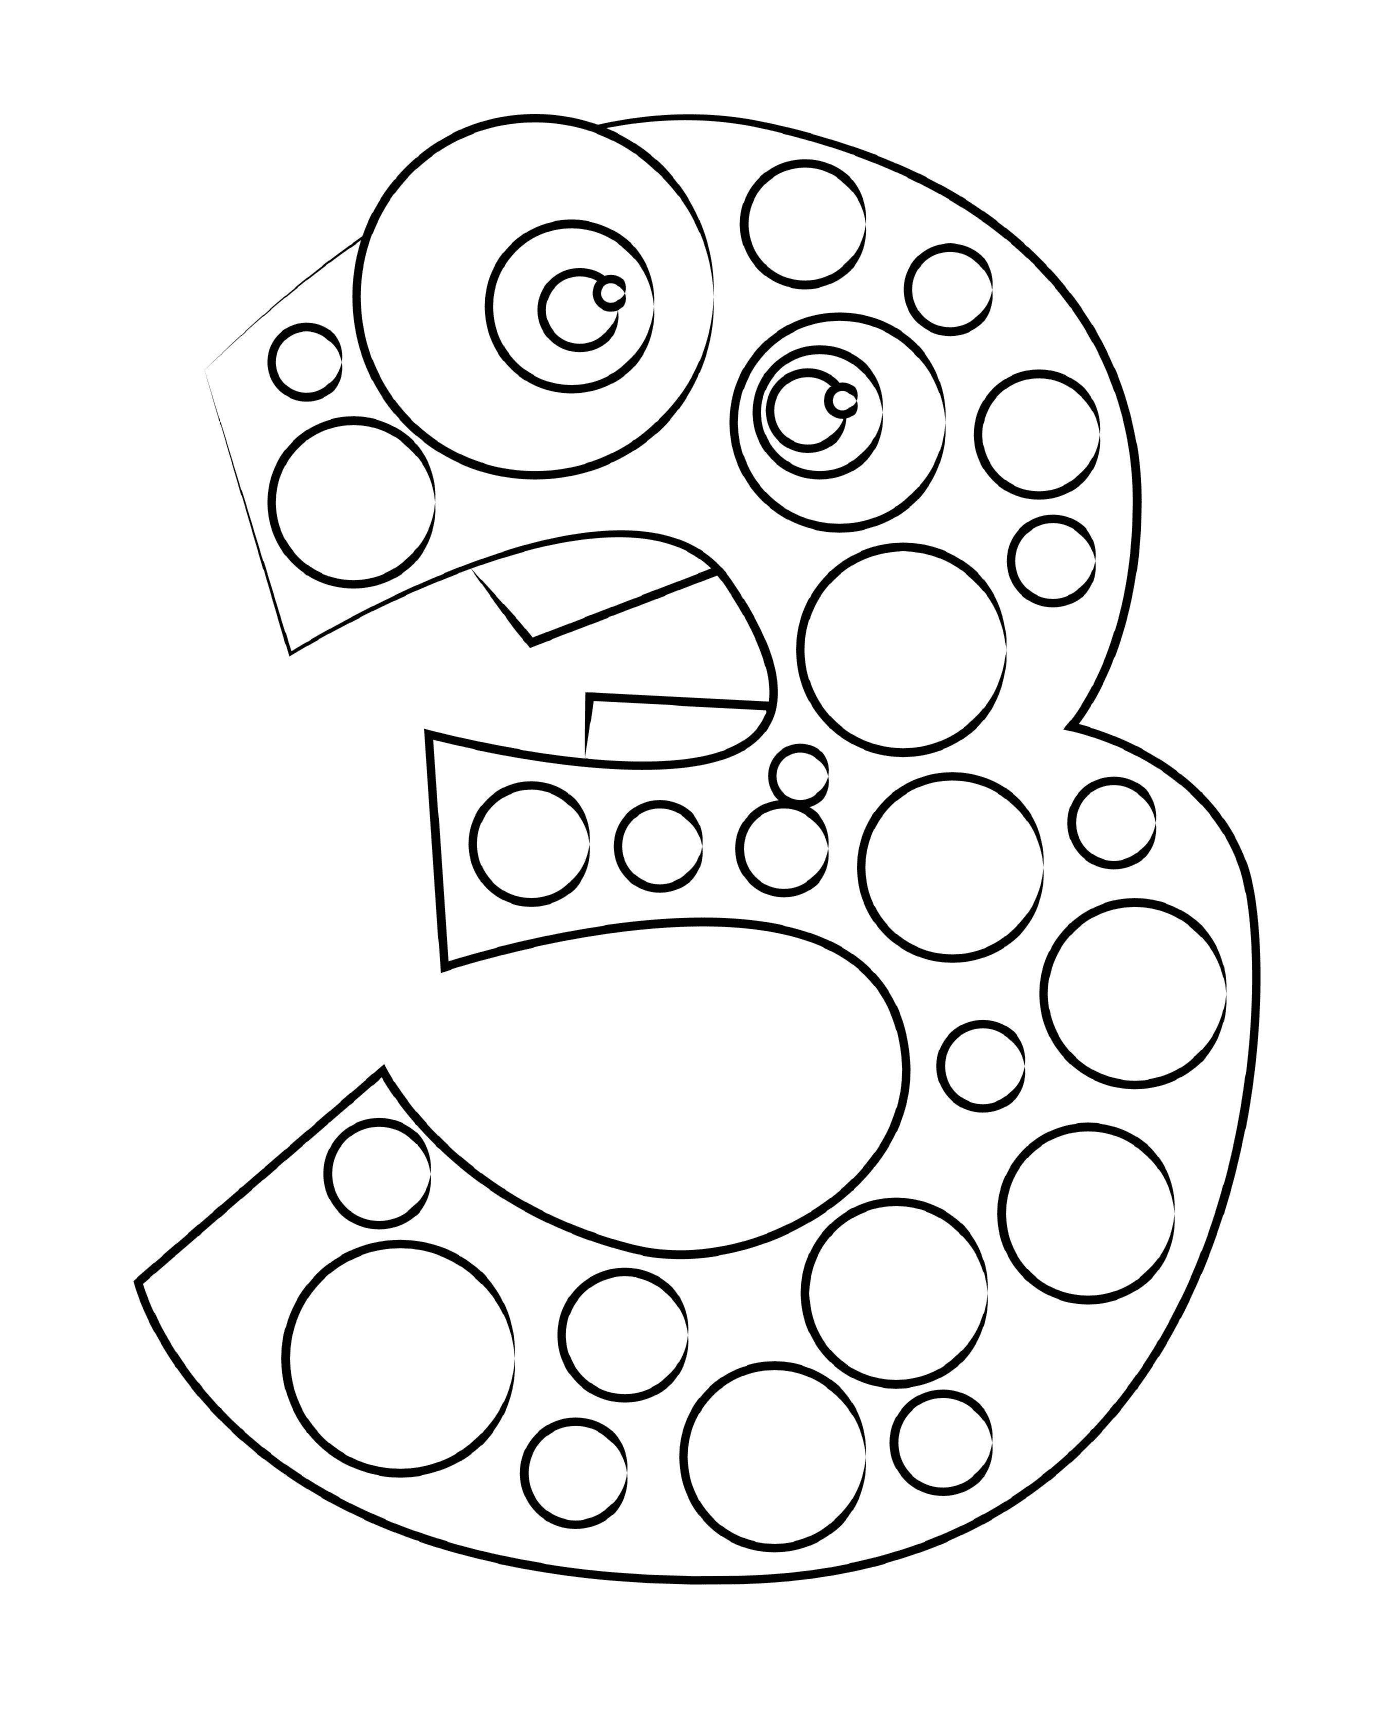  Número tres compuesto de círculos 